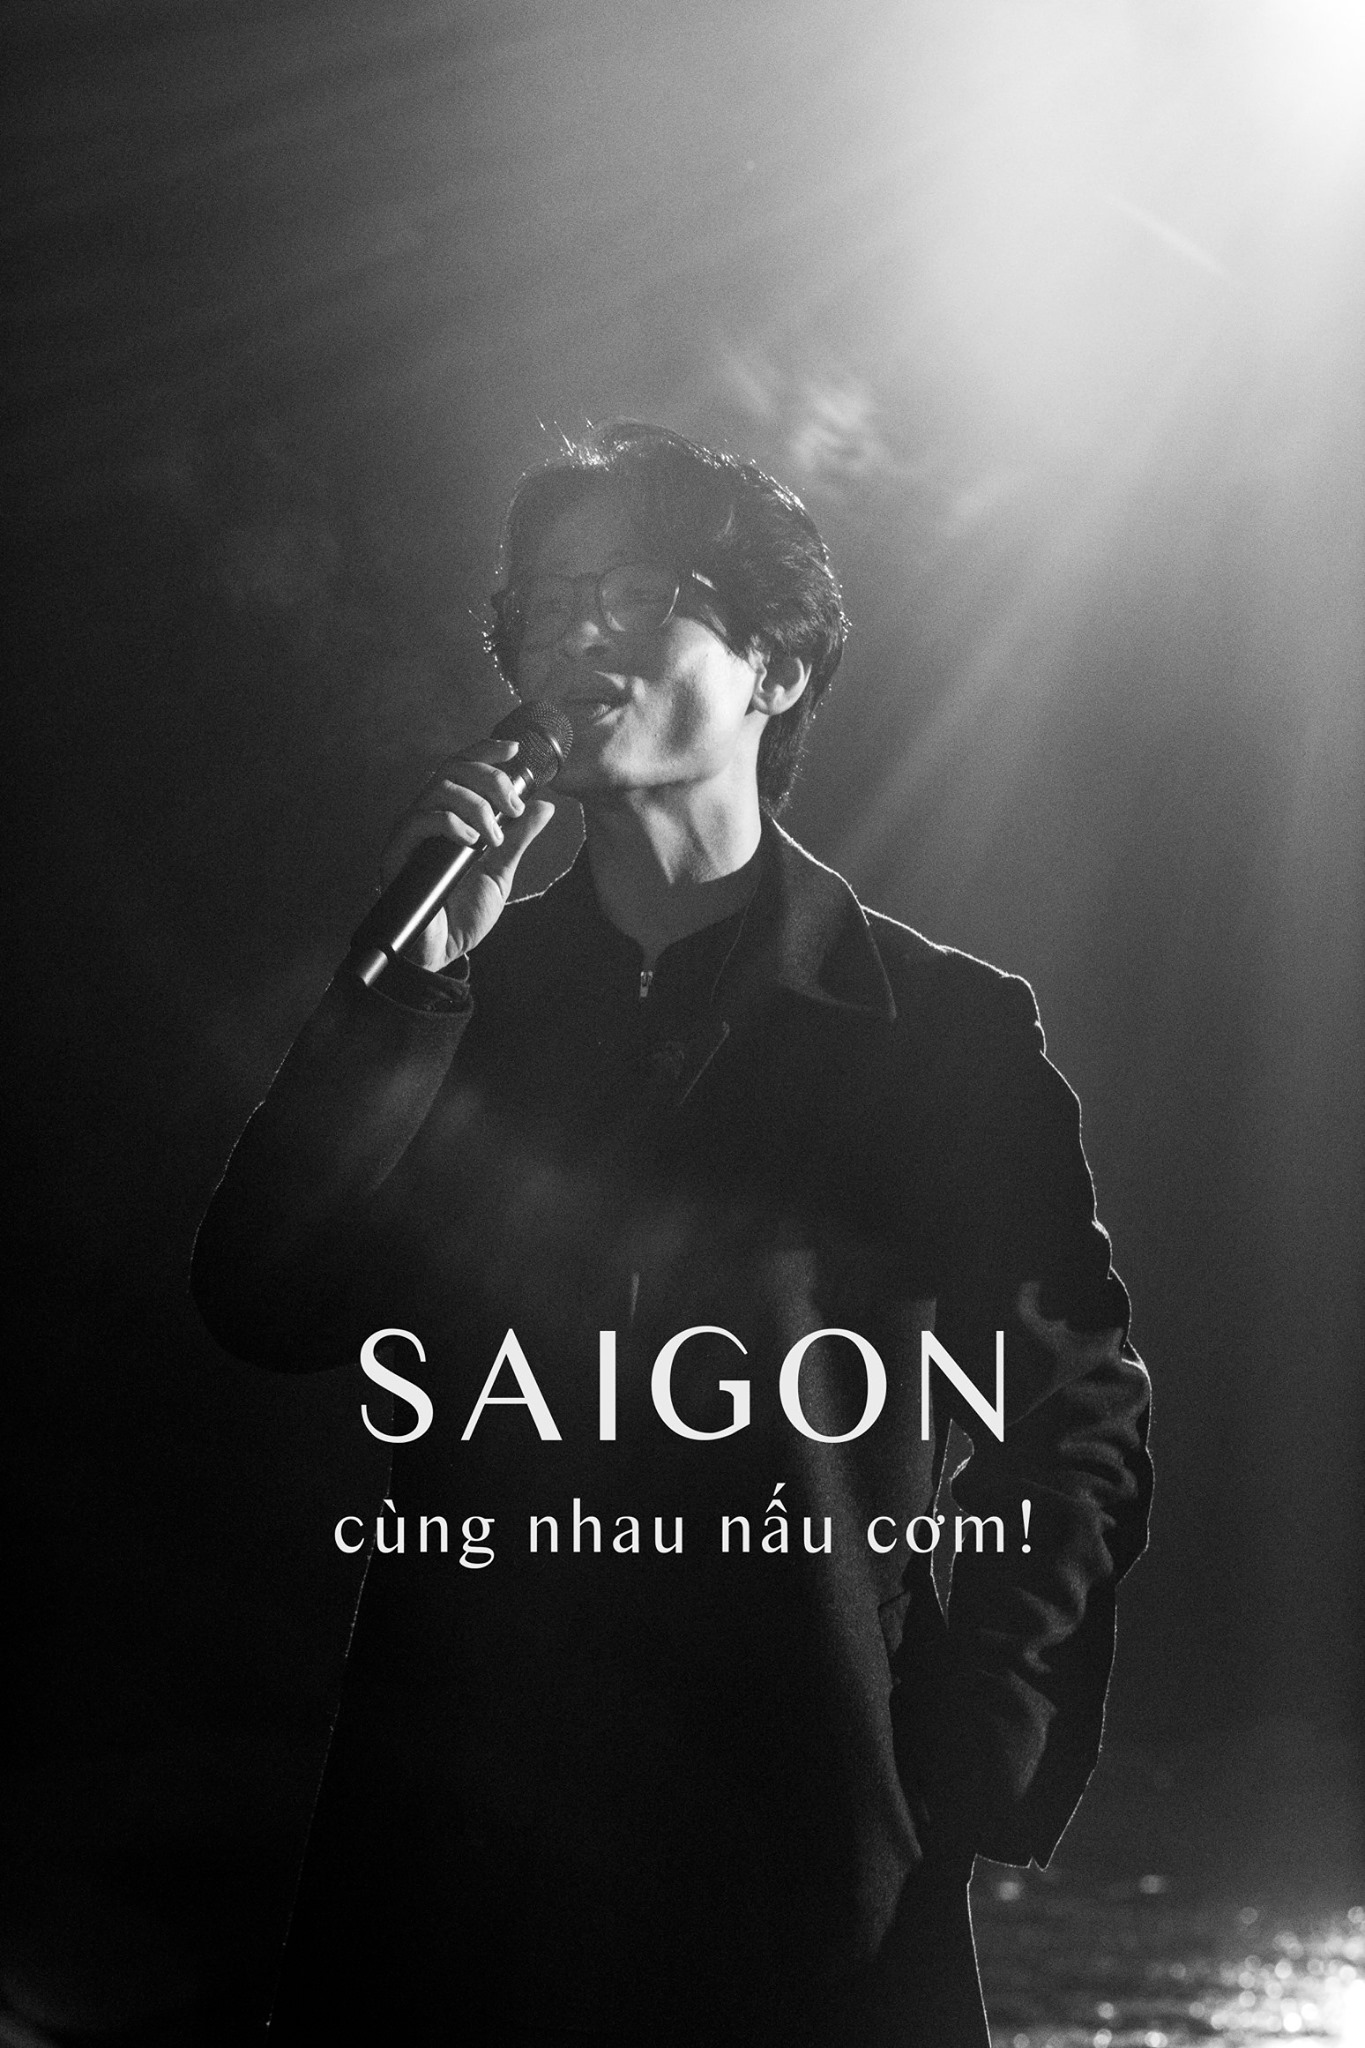 Tấm lòng của ca sĩ Hà Anh Tuấn Khi mệt, cả Sài Gòn sẽ cùng nhau nấu cơm. Ảnh: facebook ca sĩ Hà Anh Tuấn